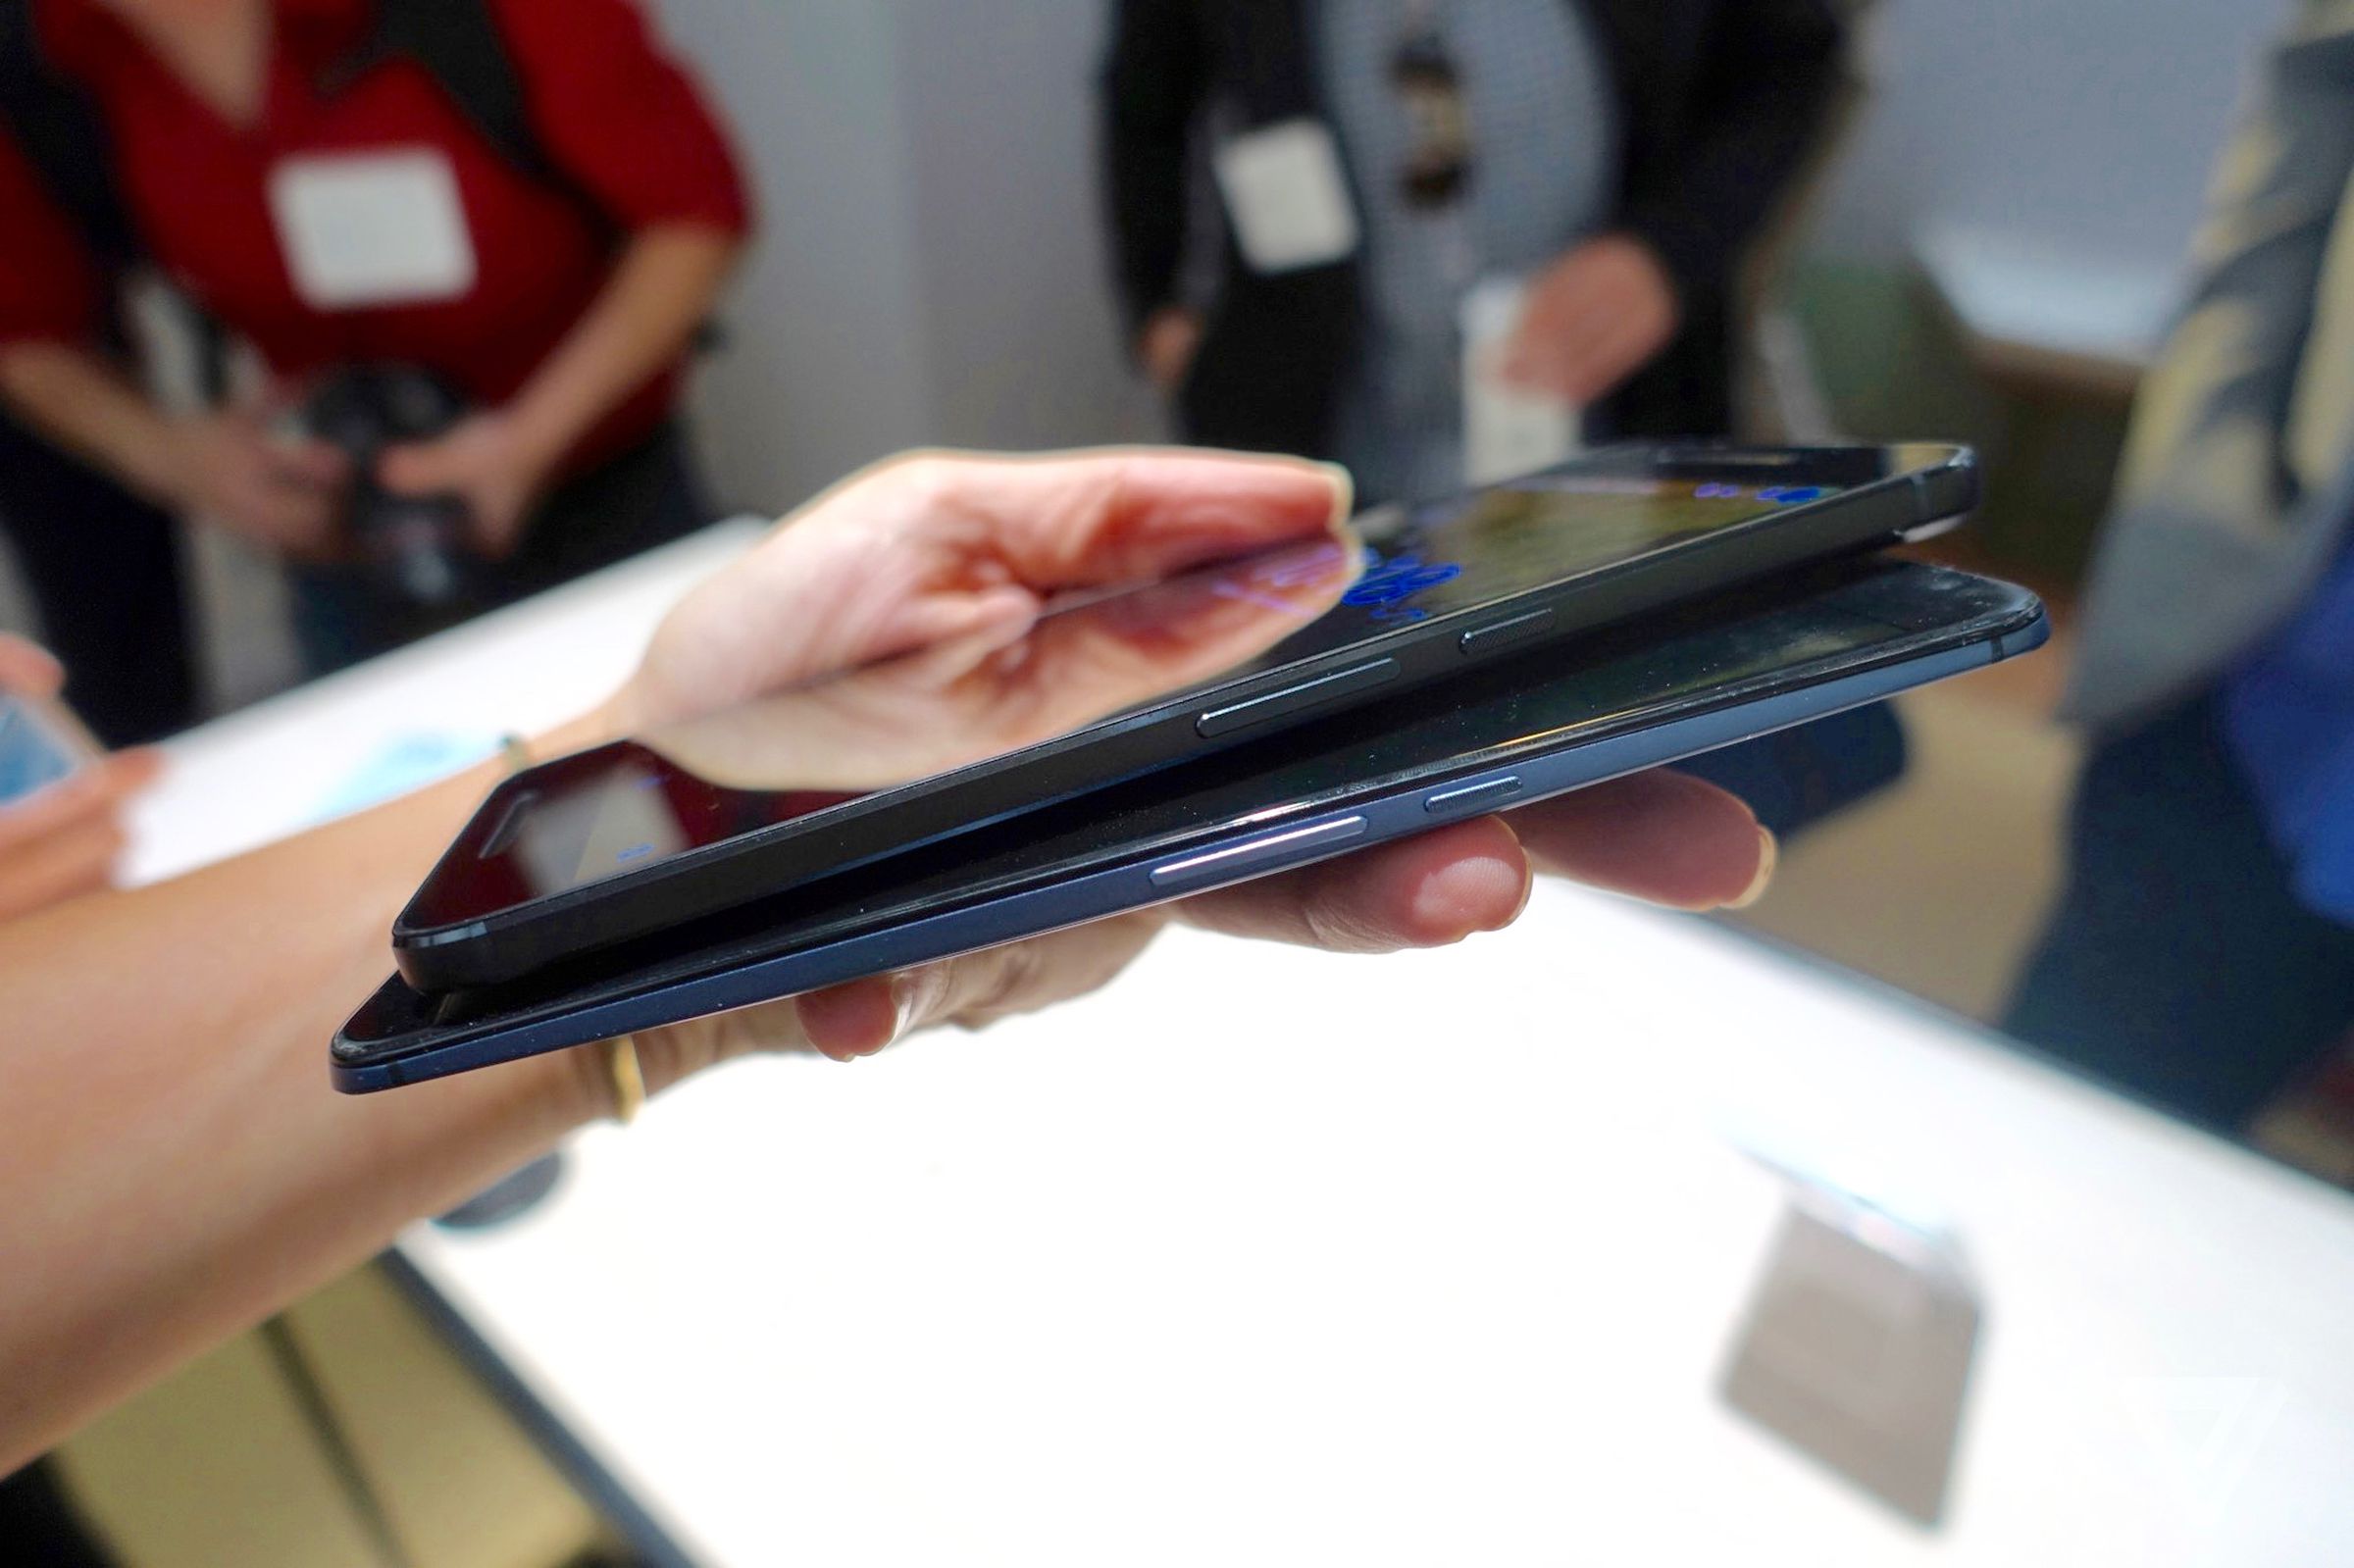 Hands on with new Nexus 6P smartphone